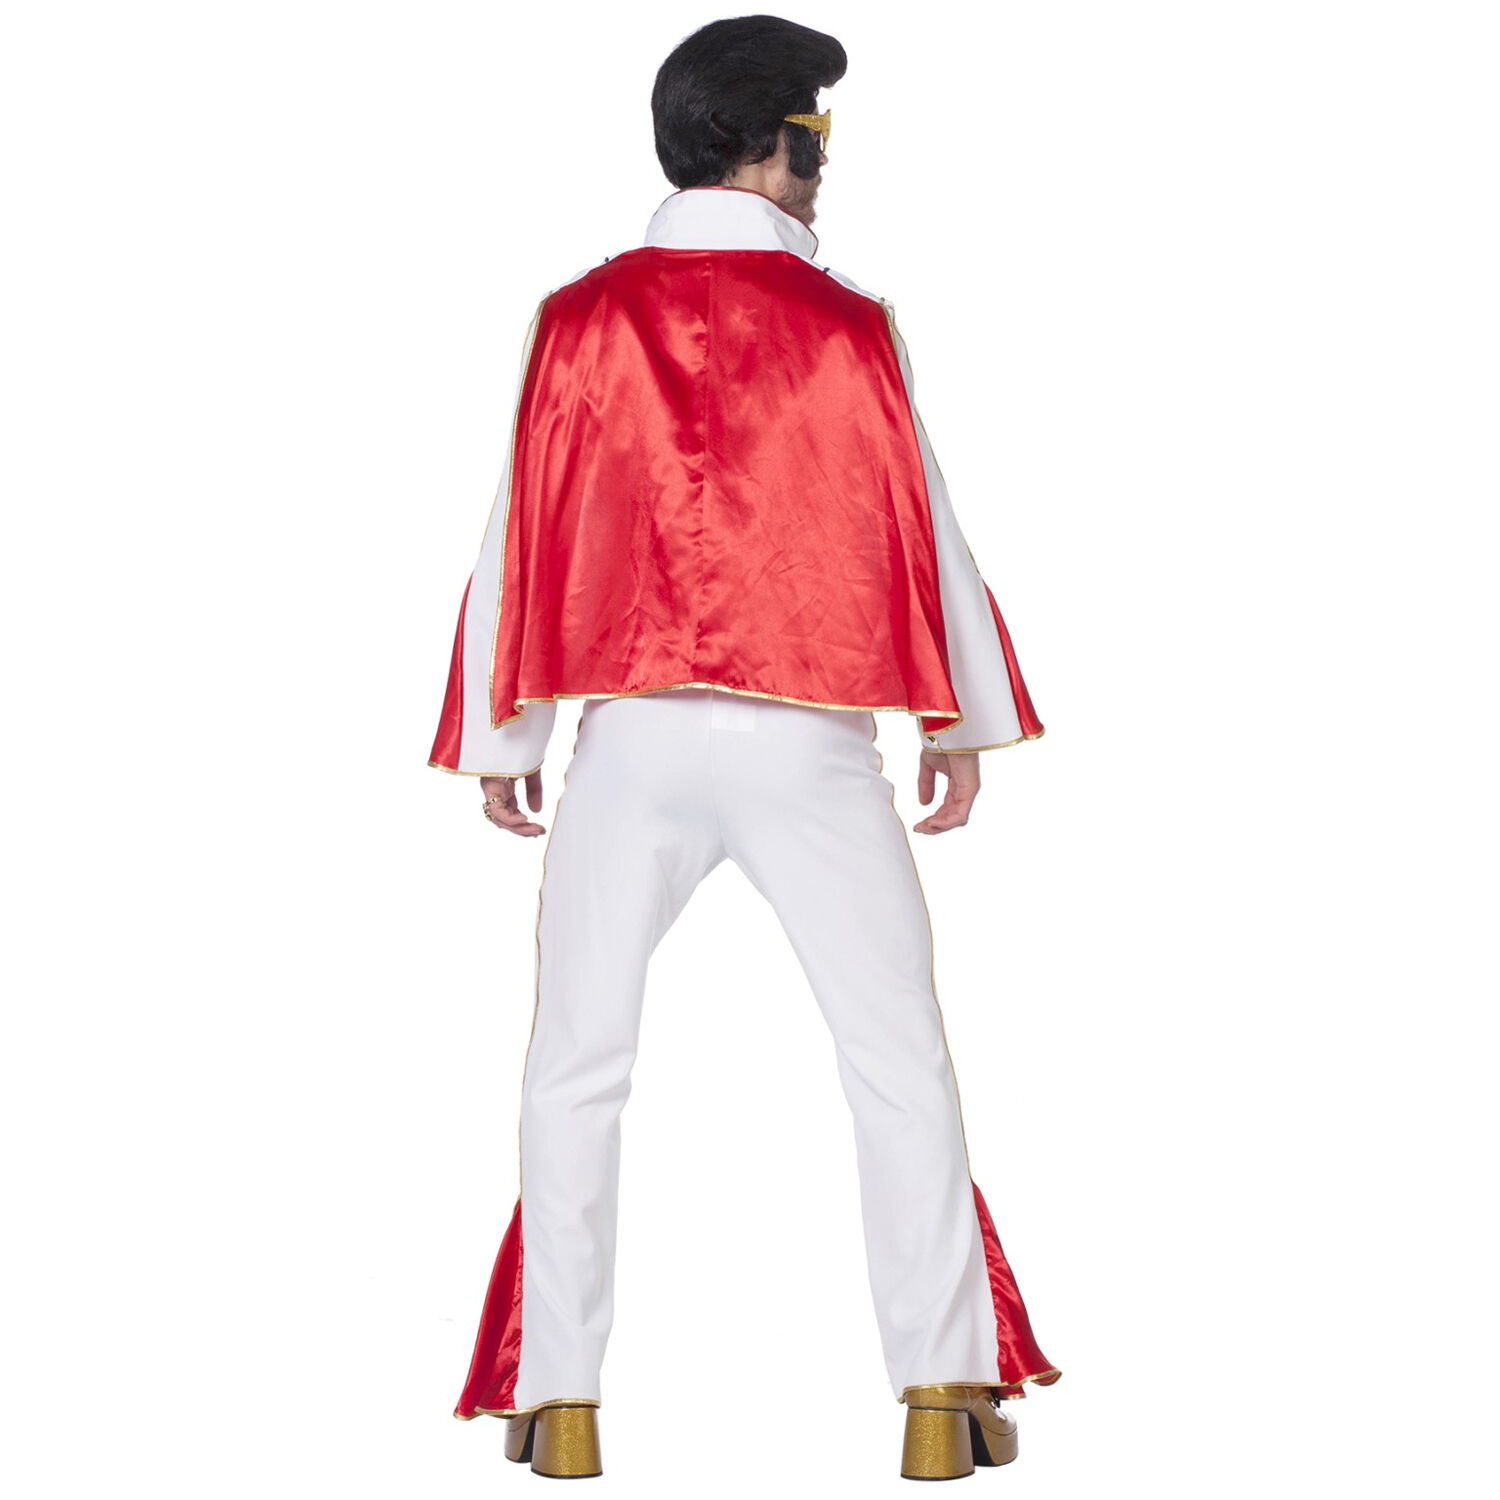 Herren-Kostüm Mr. Elvis, weiß/rot, Gr. 50-52 Bild 3